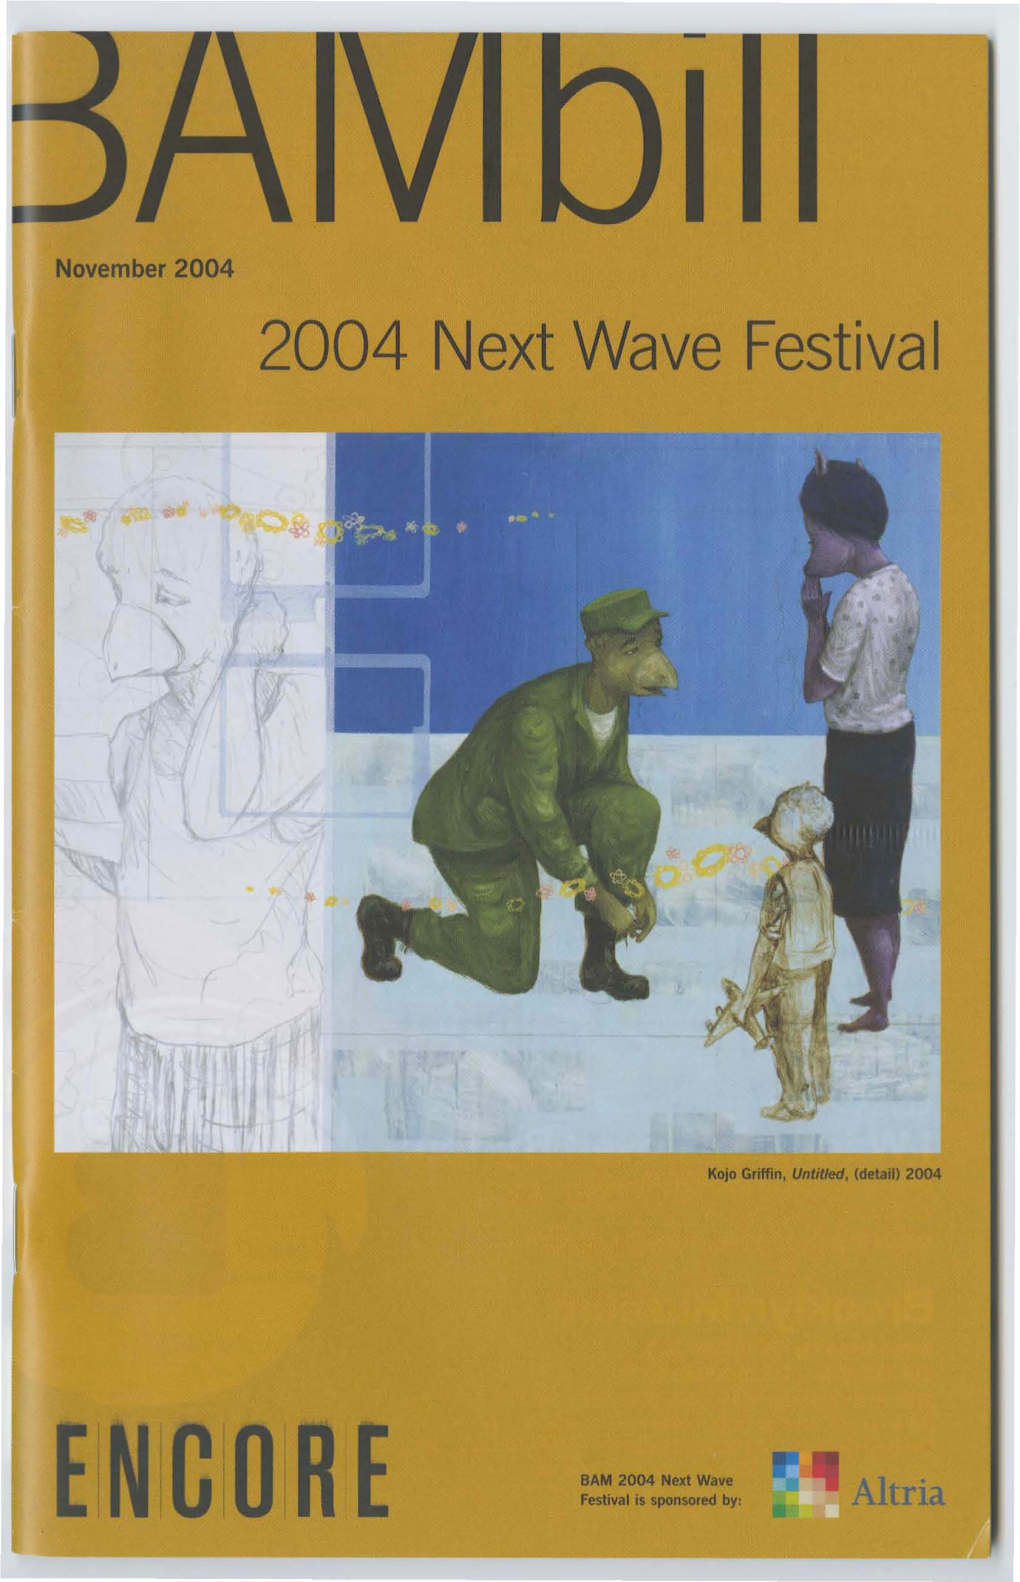 2004 Next Wave Festival